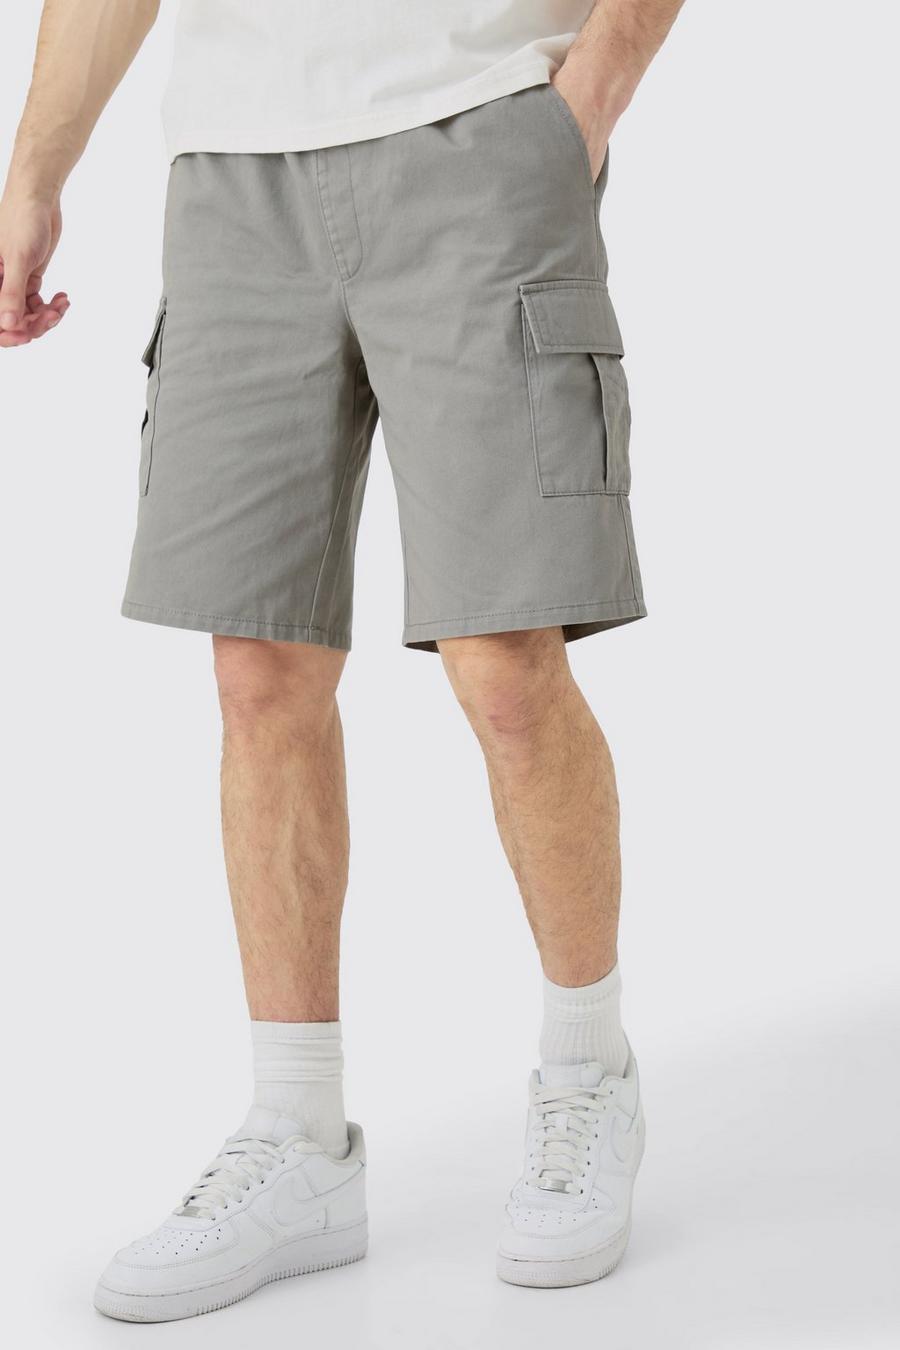 Tall lockere Cargo-Shorts mit elastischem Bund in Grau, Grey